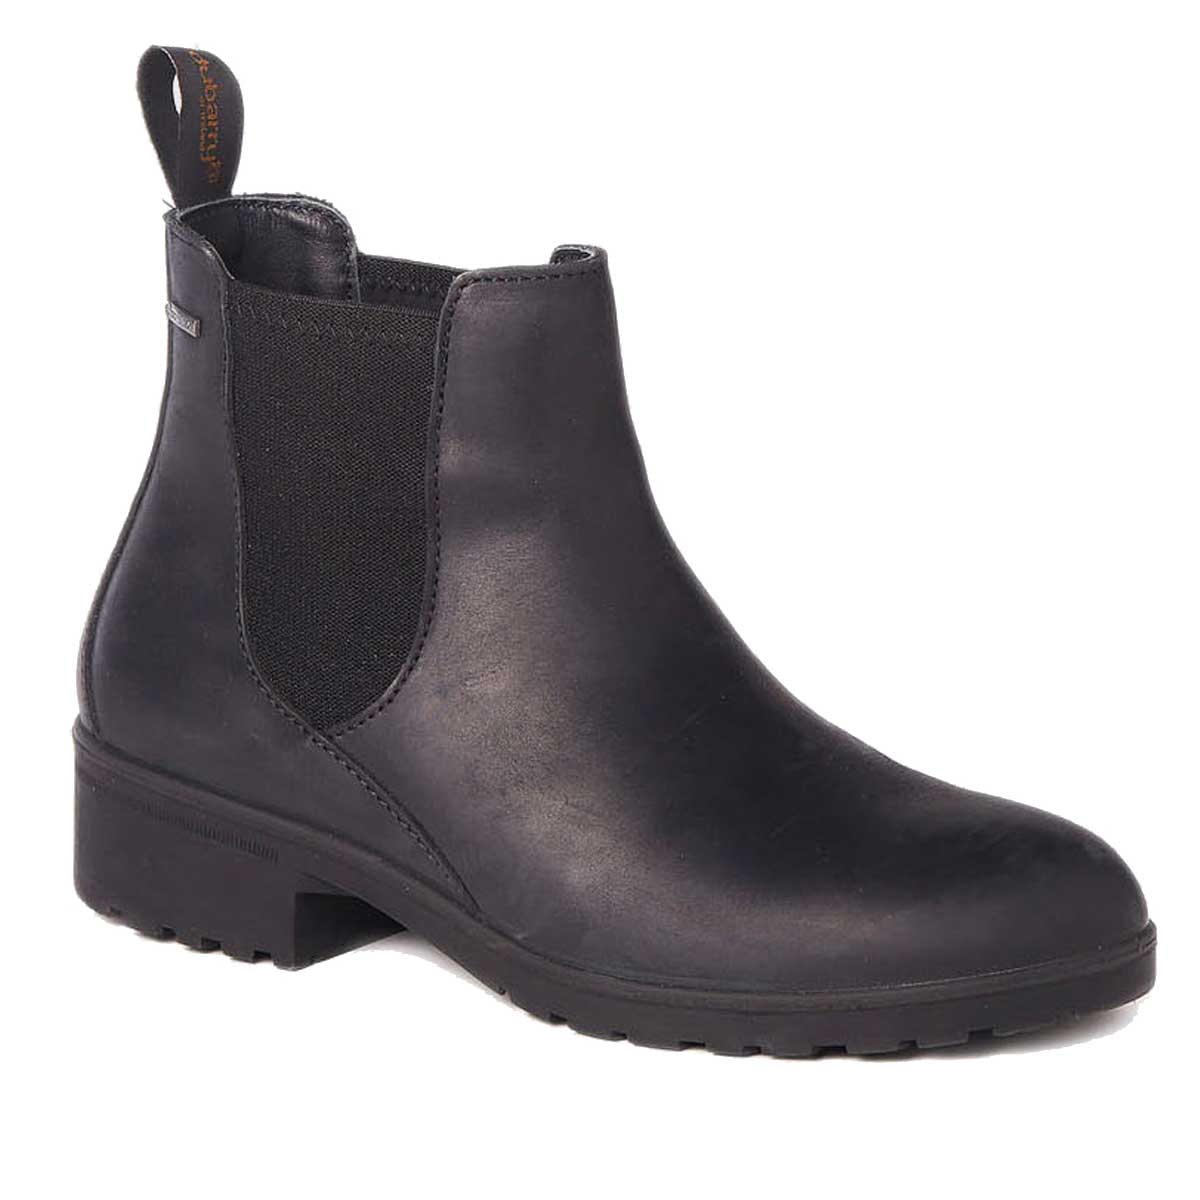 DUBARRY Waterford Waterproof Chelsea Boots - Women's - Black